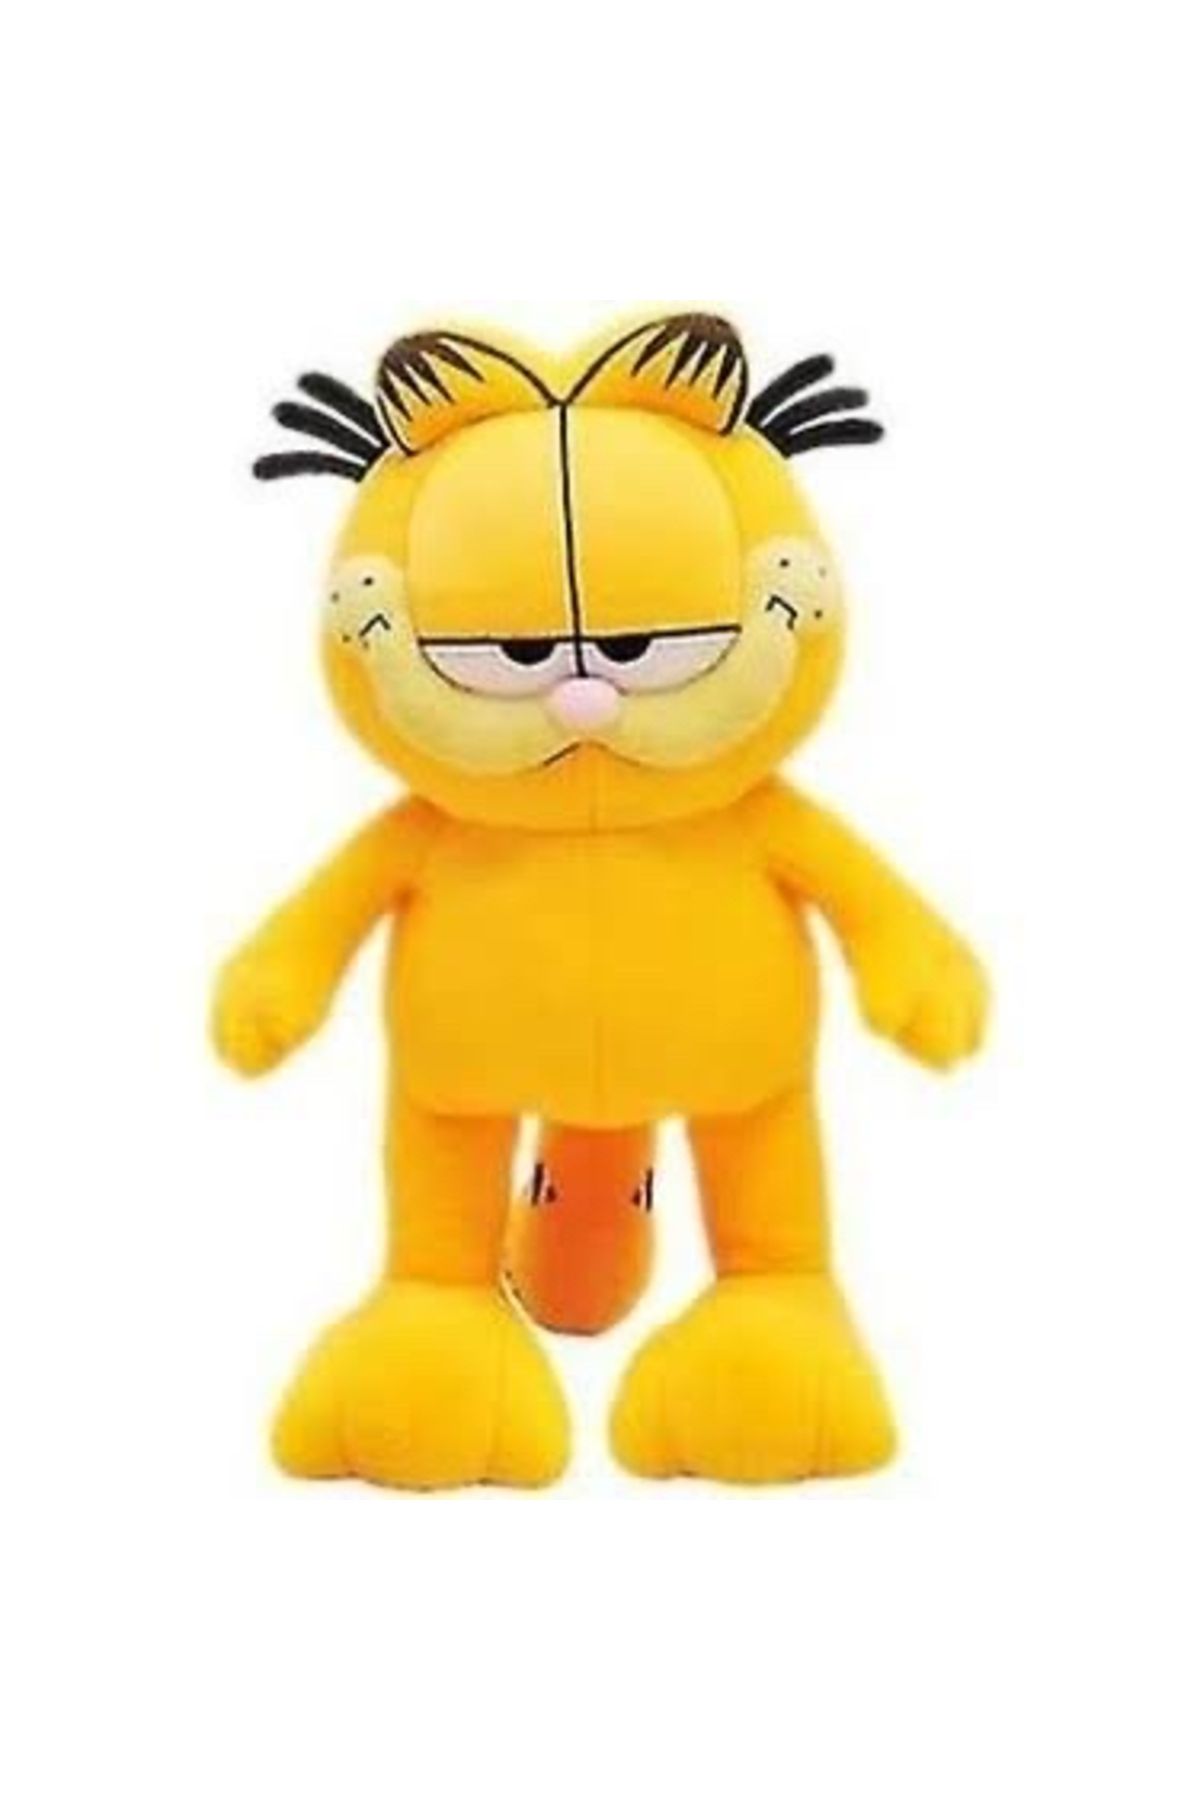 Strong Büyük boy Garfield peluş kedi peluş oyuncak ha